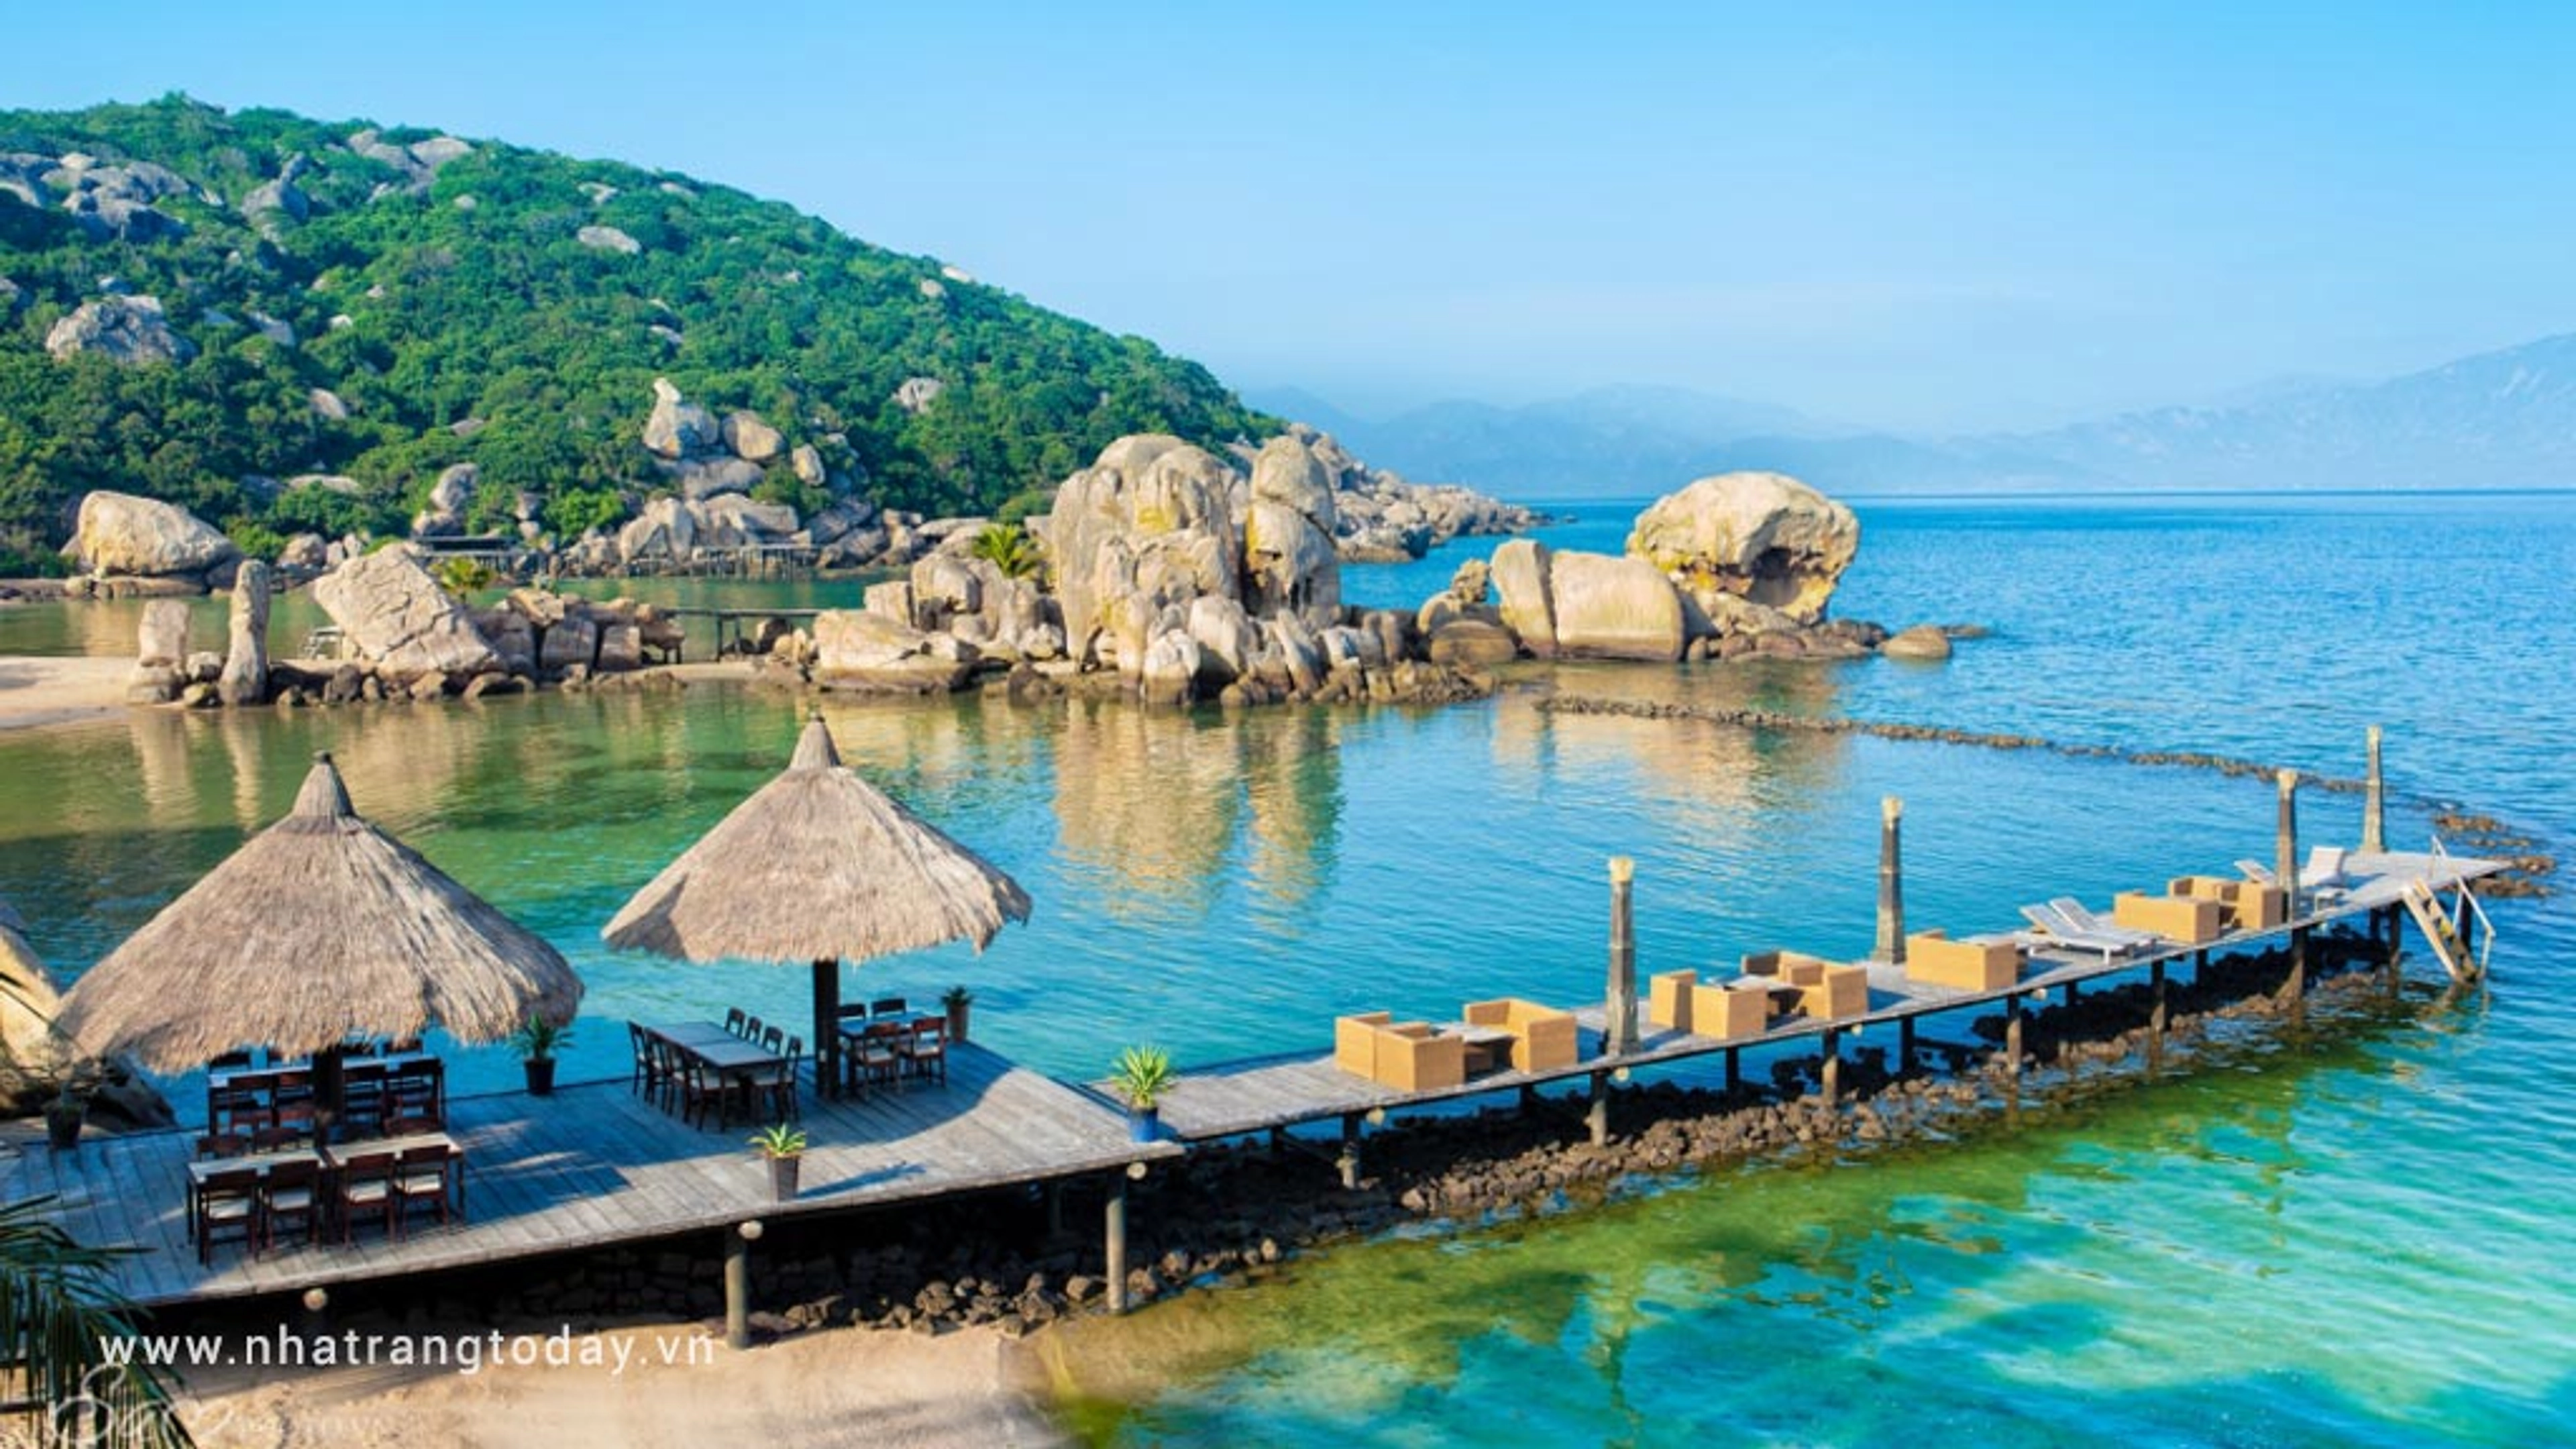 Đảo Bình Lập - Thiên đường hoang sơ giữa vùng biển Nha Trang